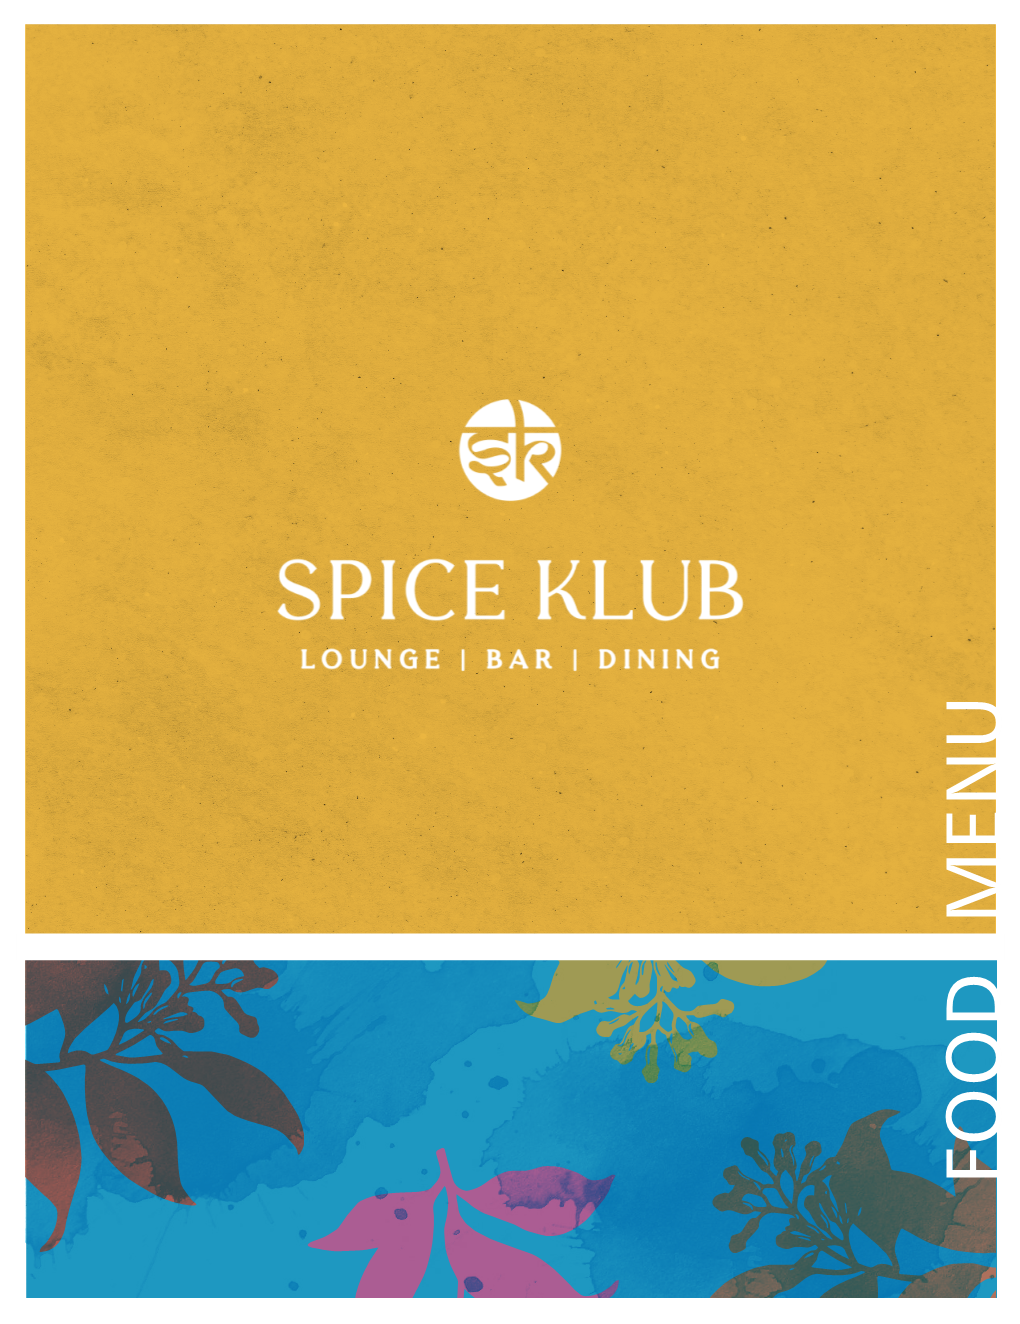 Spice Klub Menu Design Final